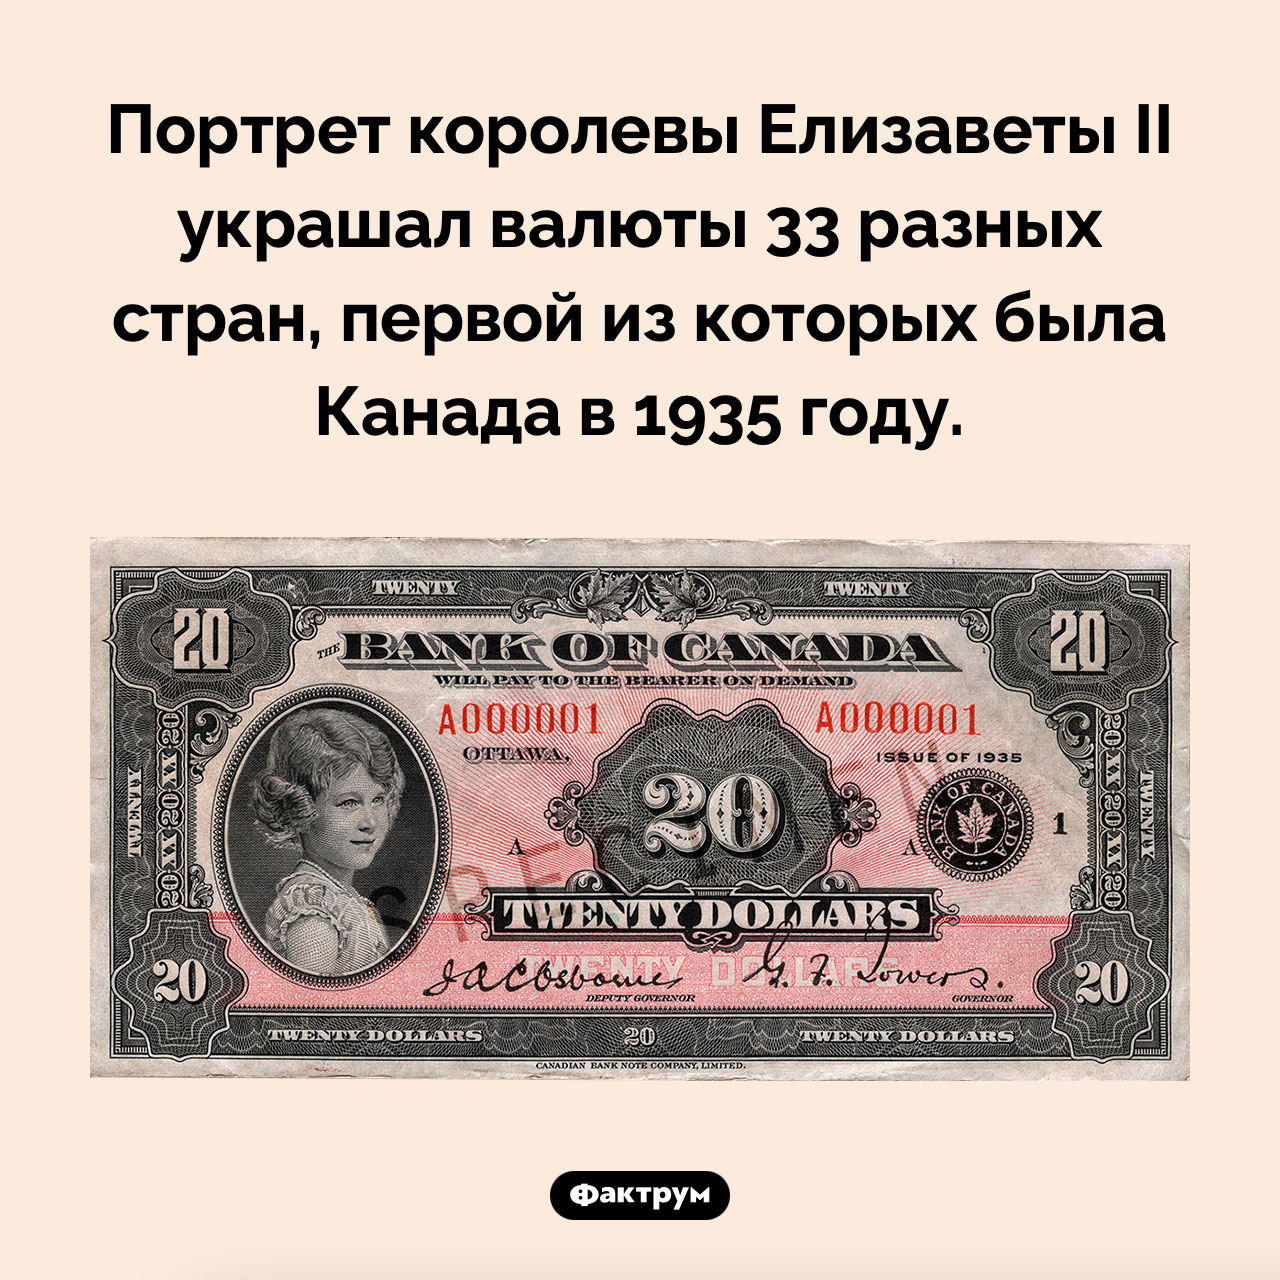 Валюты каких стран украшал портрет королевы Елизаветы II